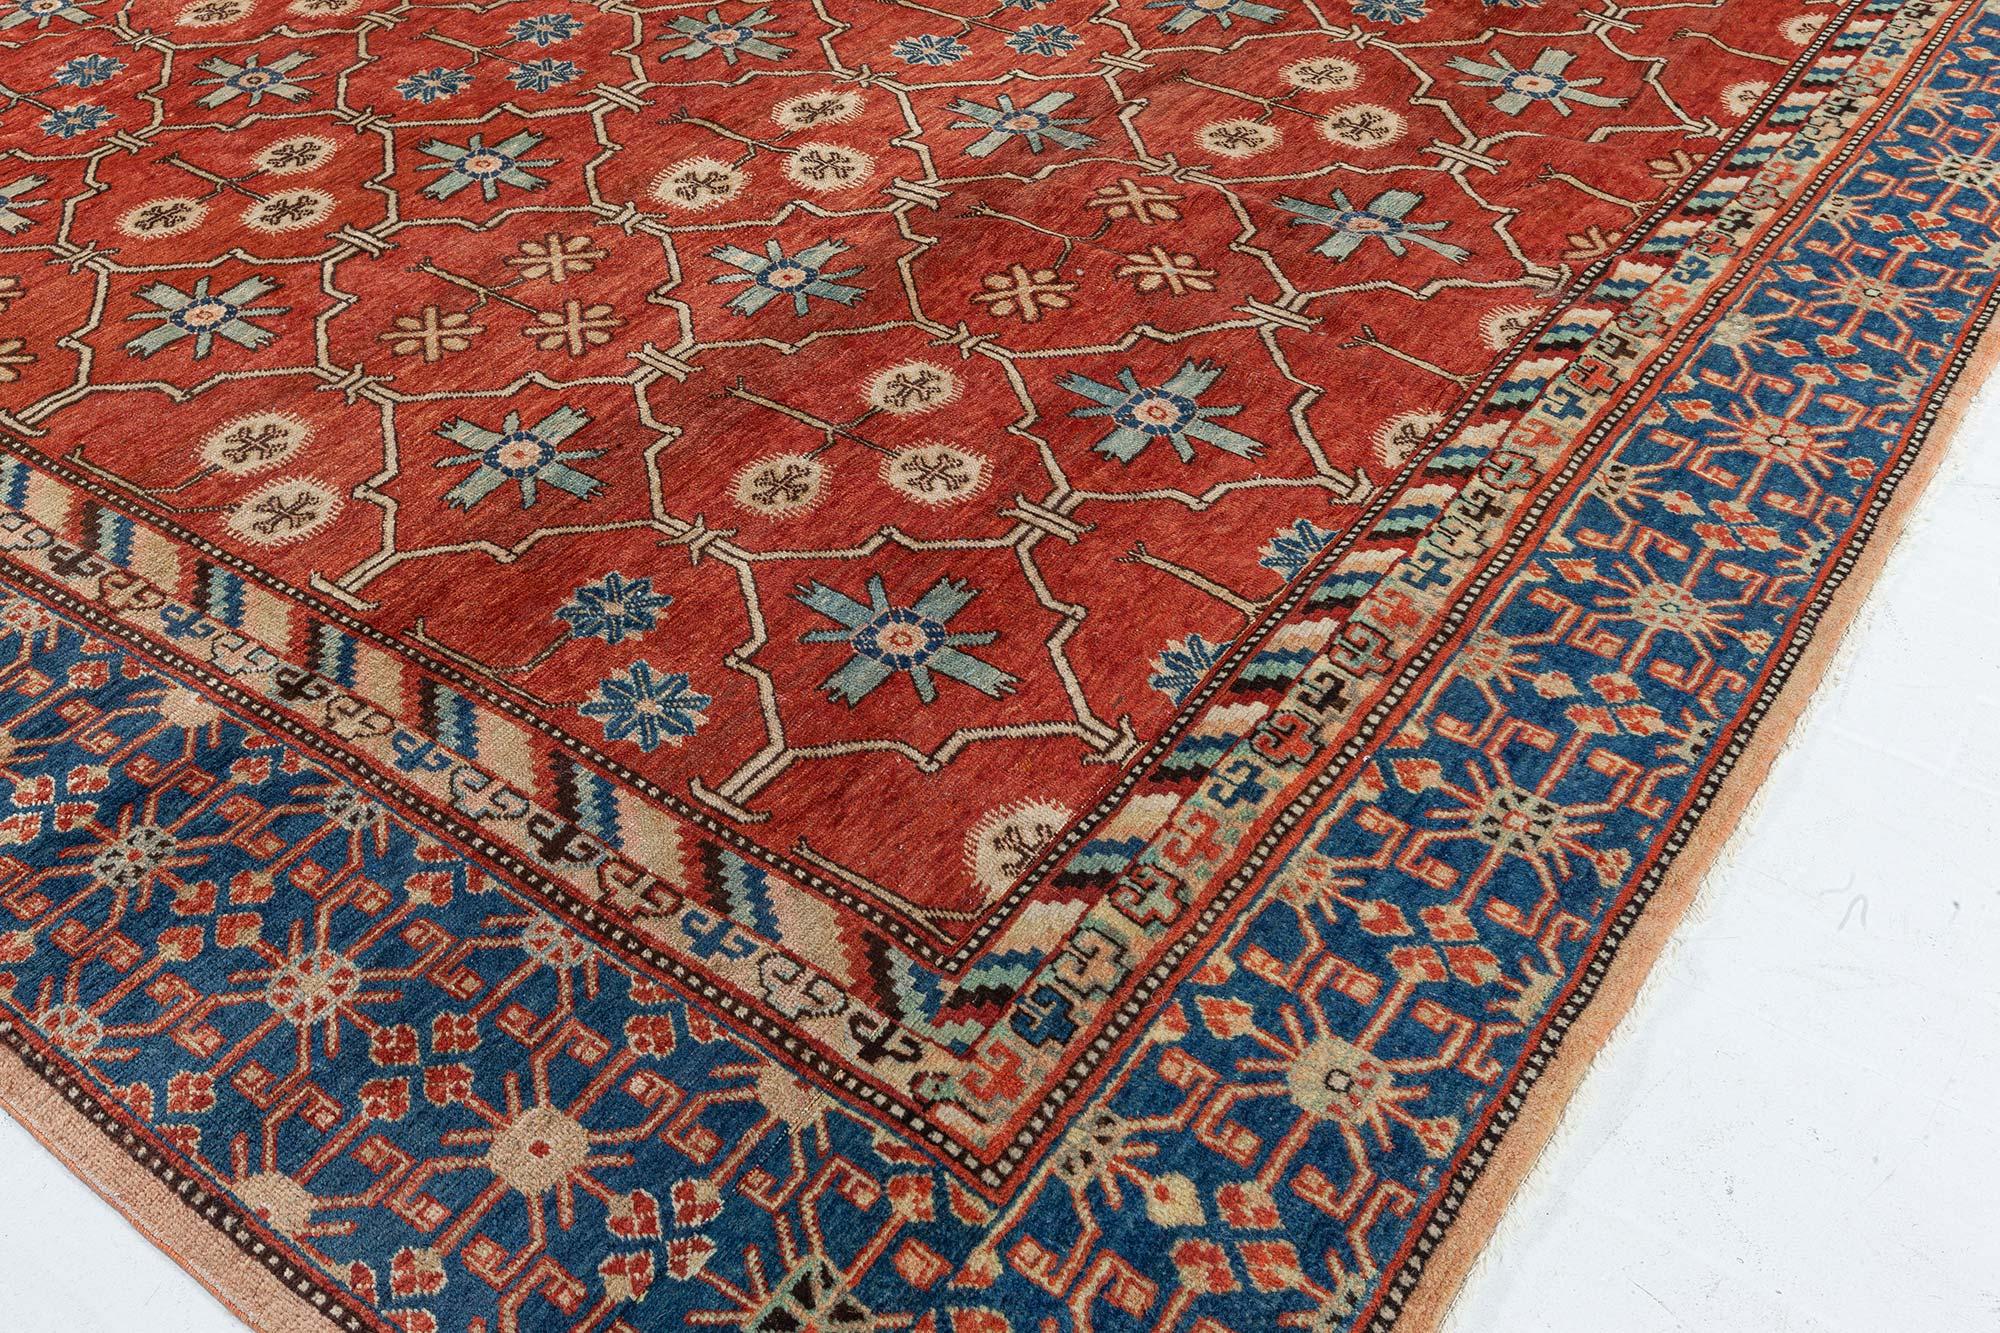 Vintage Samarkand (Khotan) Teppich
Größe: 8'9